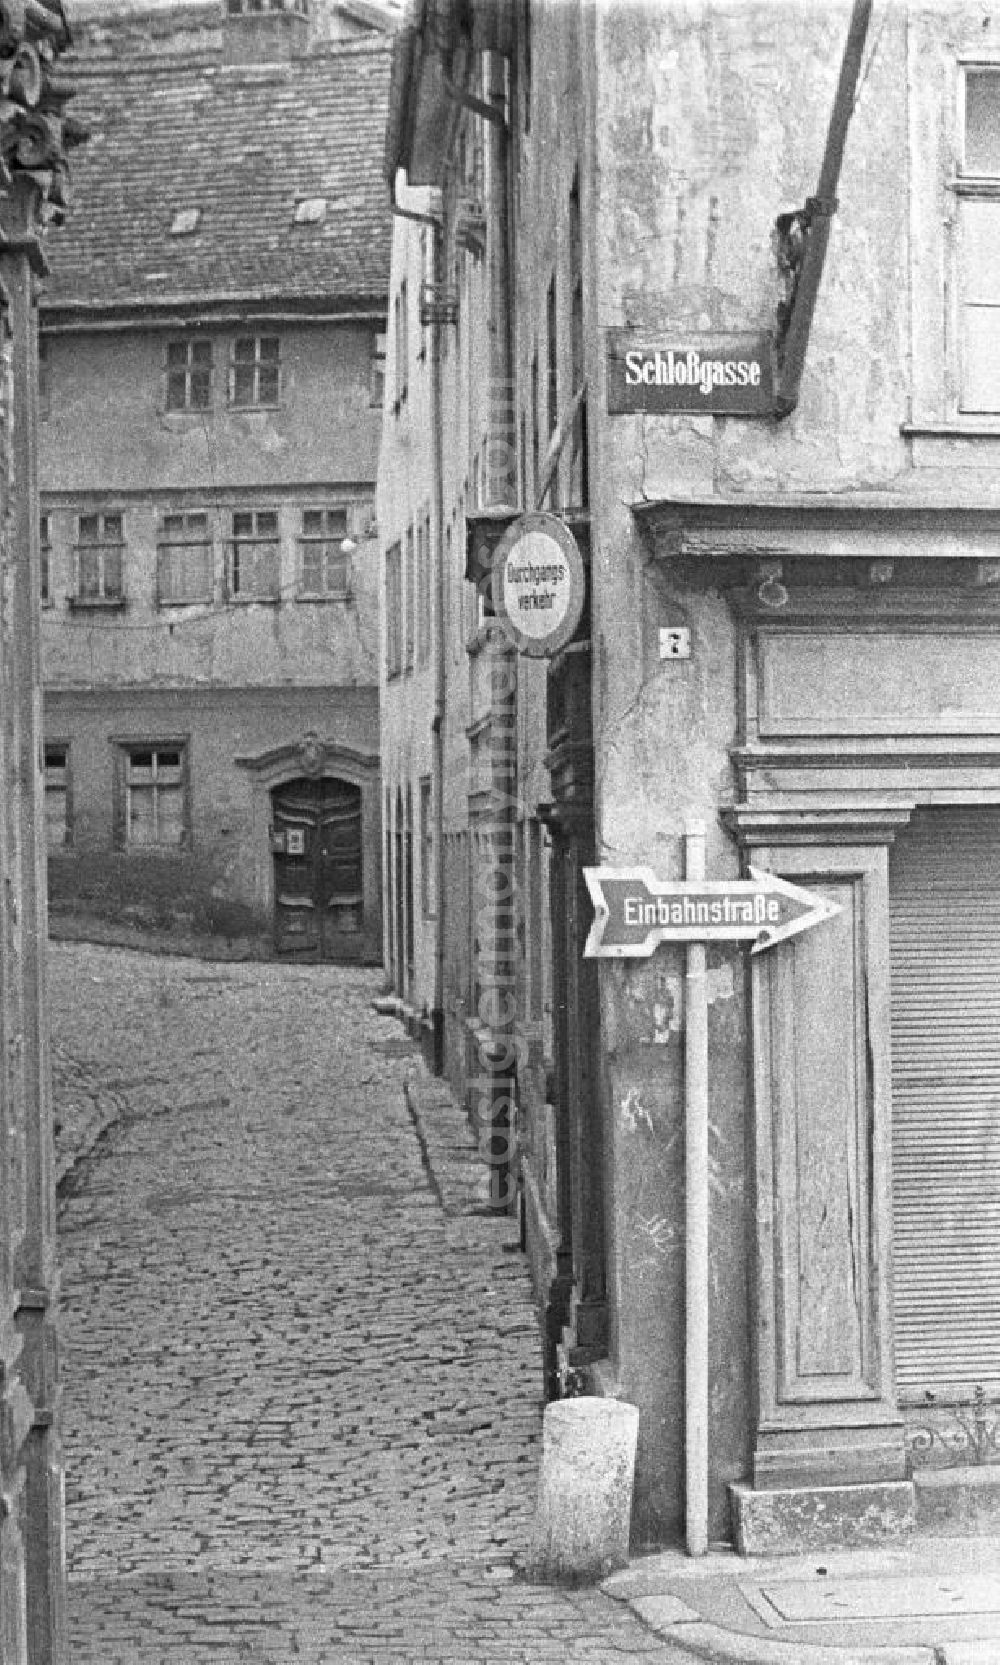 GDR photo archive: Weimar - Blick auf die Schloßgasse Nr. 7. Im Hintergrund ist eine Gasse mit Pflasterstein und Altbau / Mehrfamilienhaus zu sehen. In der Bildmitte ein Einbahnstraße-Verkehrsschild / Schild der damaligen Zeit. Bestmögliche Qualität nach Vorlage!